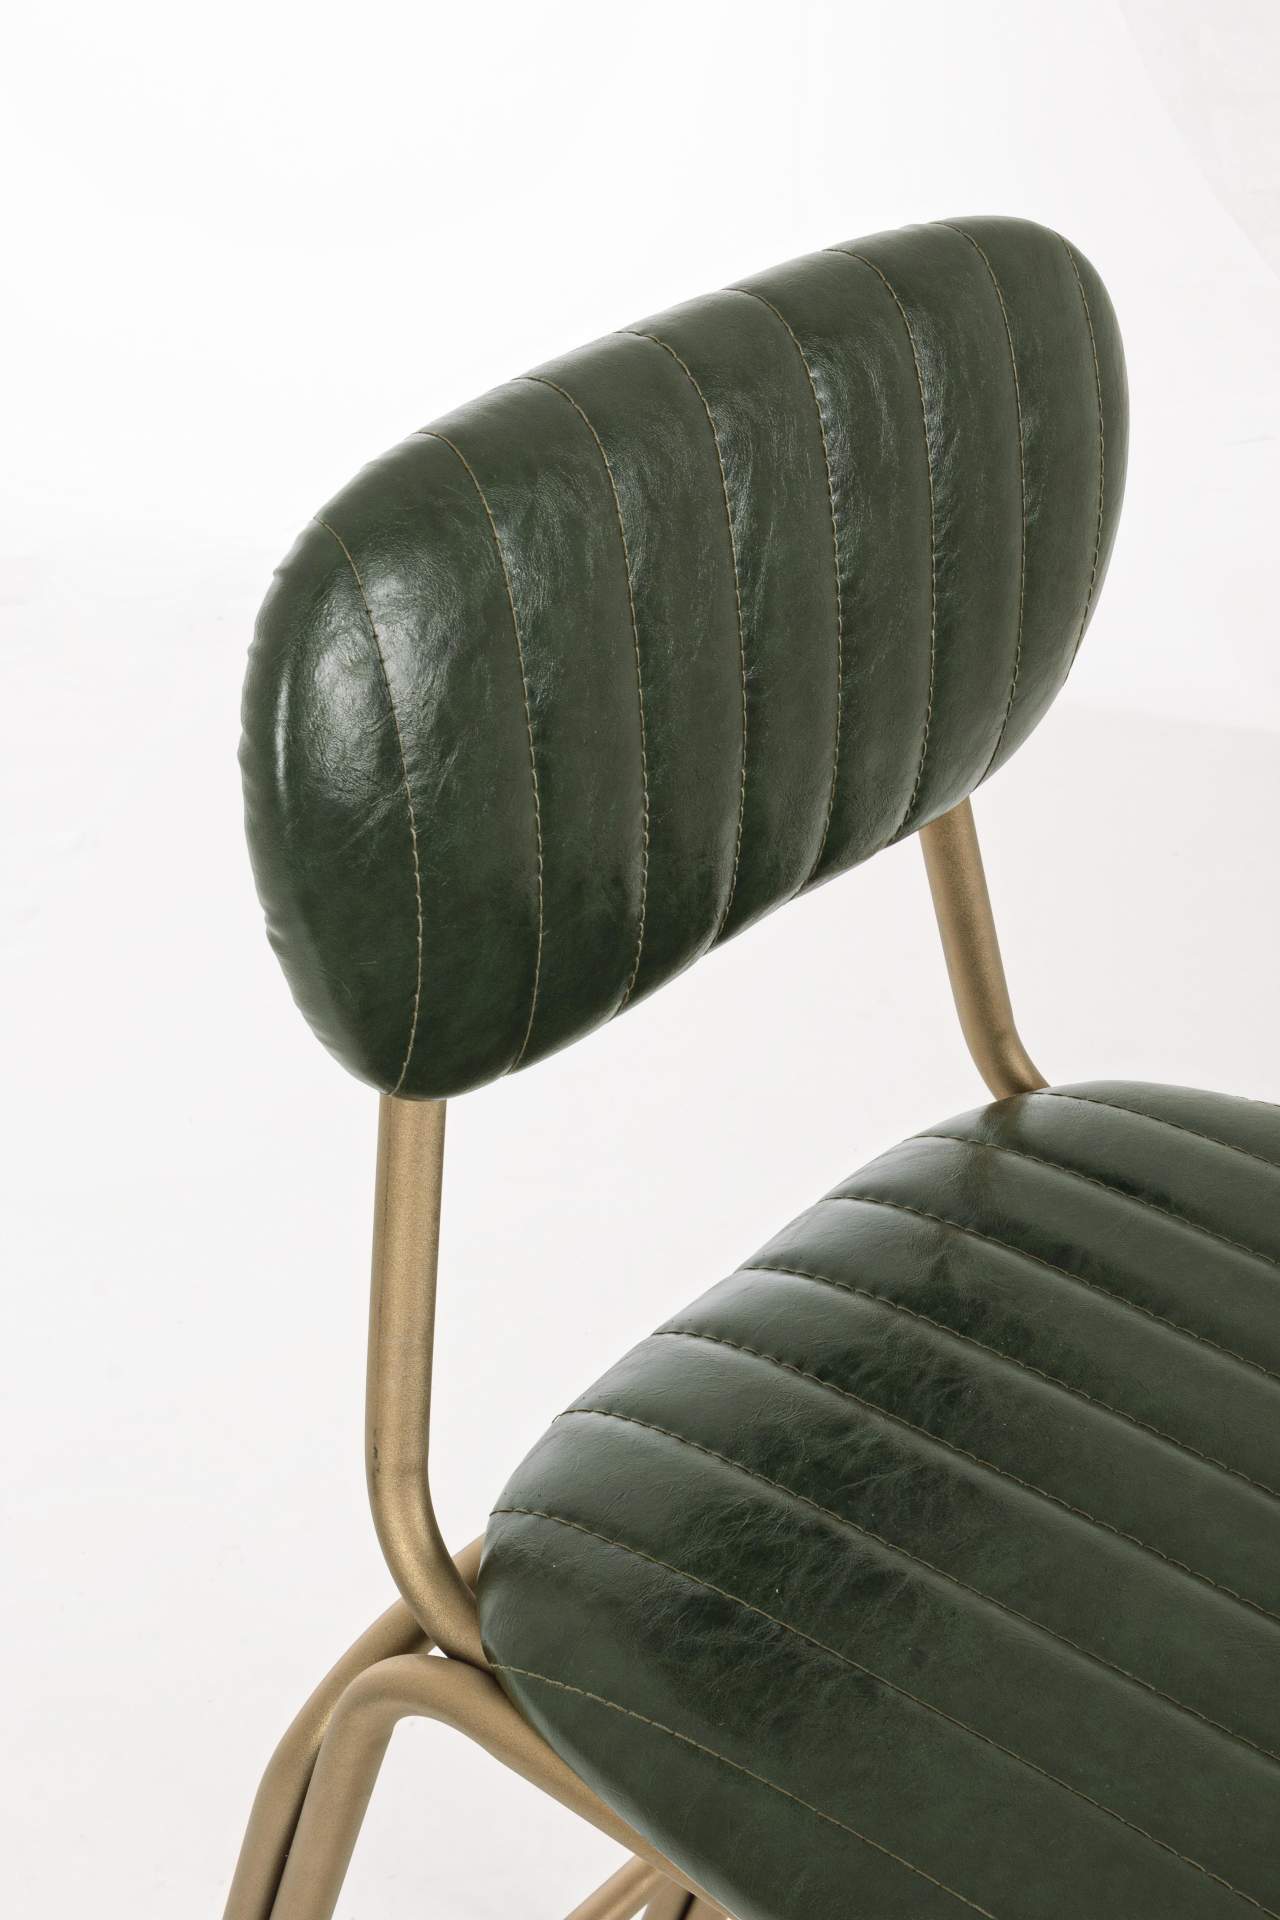 Der Barhocker Addy überzeugt mit seinem industriellem Design. Gefertigt wurde er aus Kunstleder, welches einen grünen Farbton besitzt. Das Gestell ist aus Metall und hat eine goldene Farbe. Die Sitzhöhe des Hockers beträgt 73 cm.